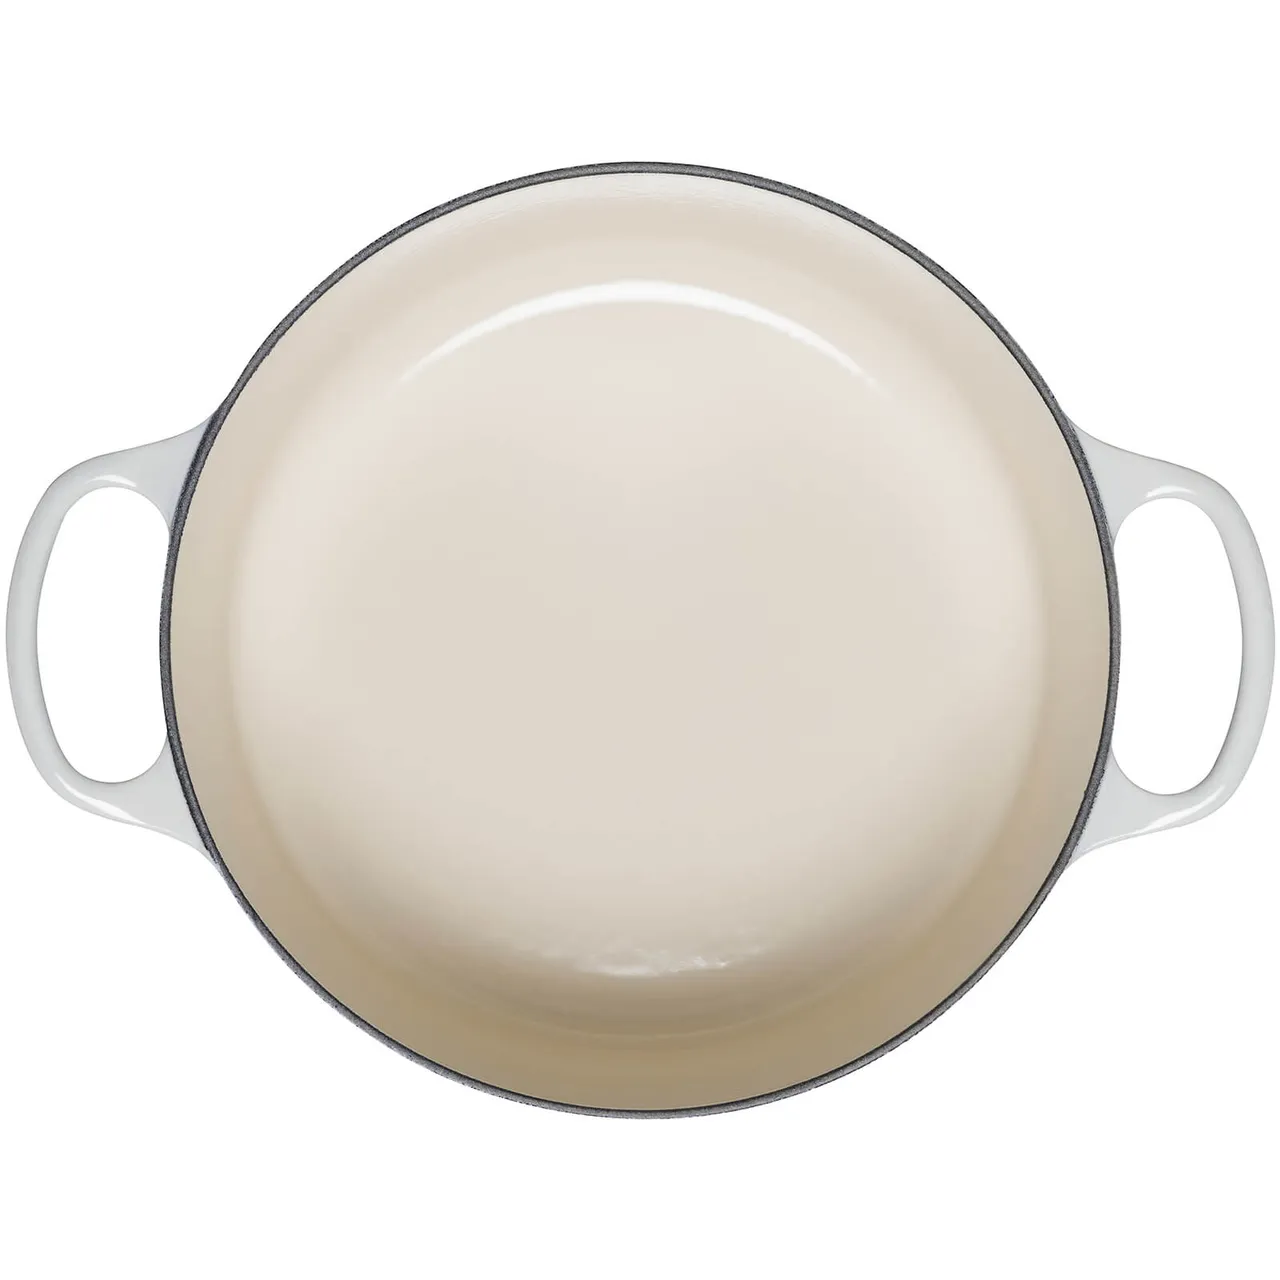 Le Creuset Signature Cast Iron Round Casserole Dish - 24cm - Meringue